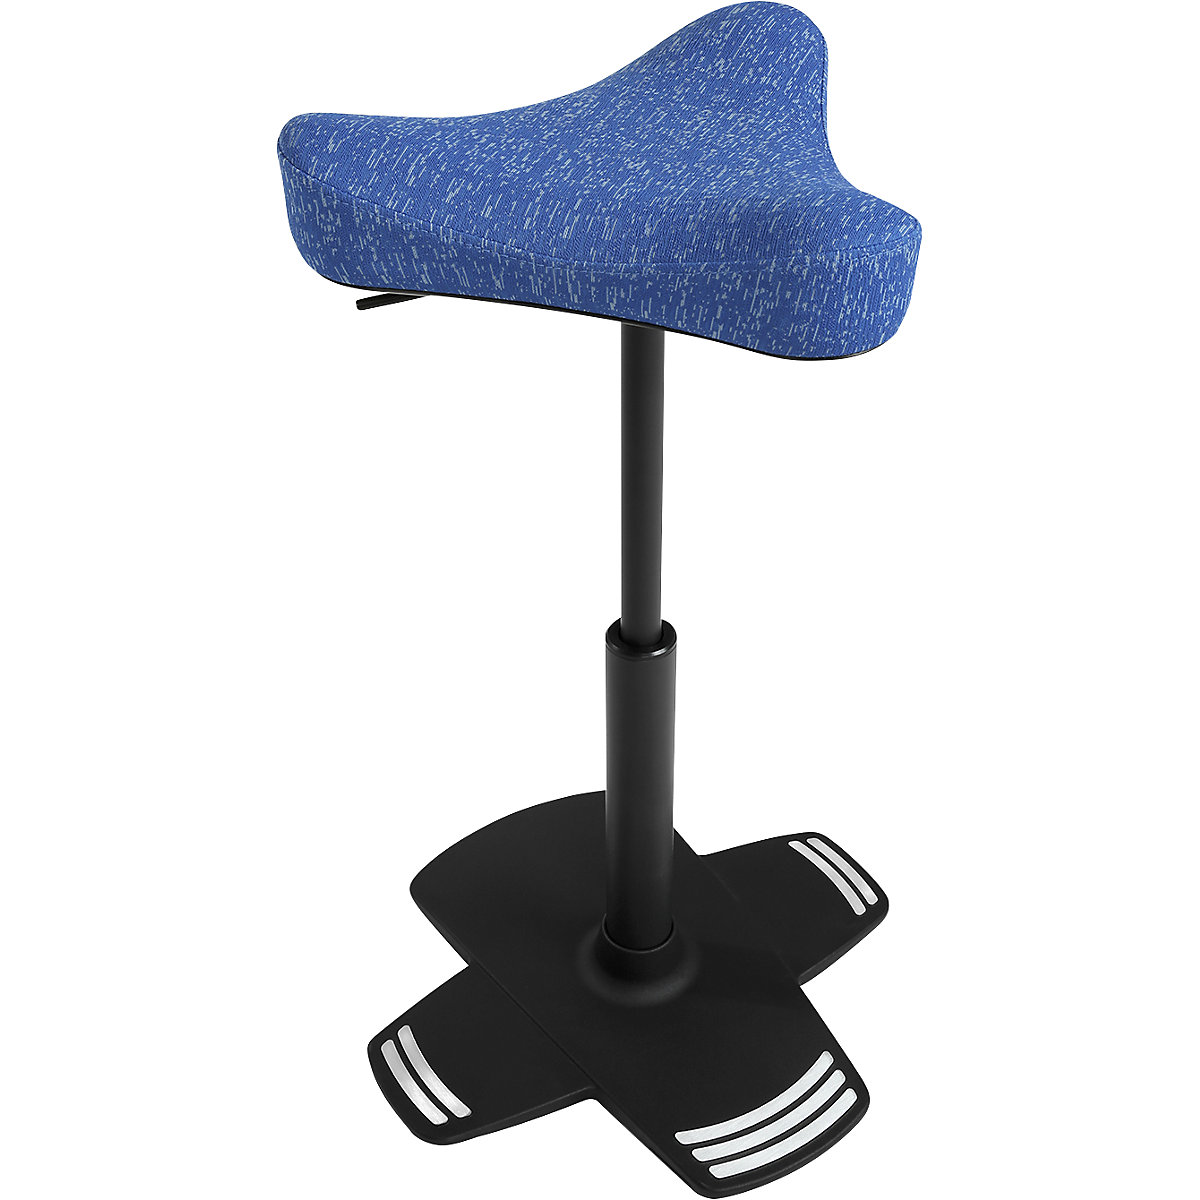 Visoki stolac SITNESS FALCON – Topstar, s ergonomski oblikovanim sedlastim sjedalom, presvlaka u plavoj boji-6